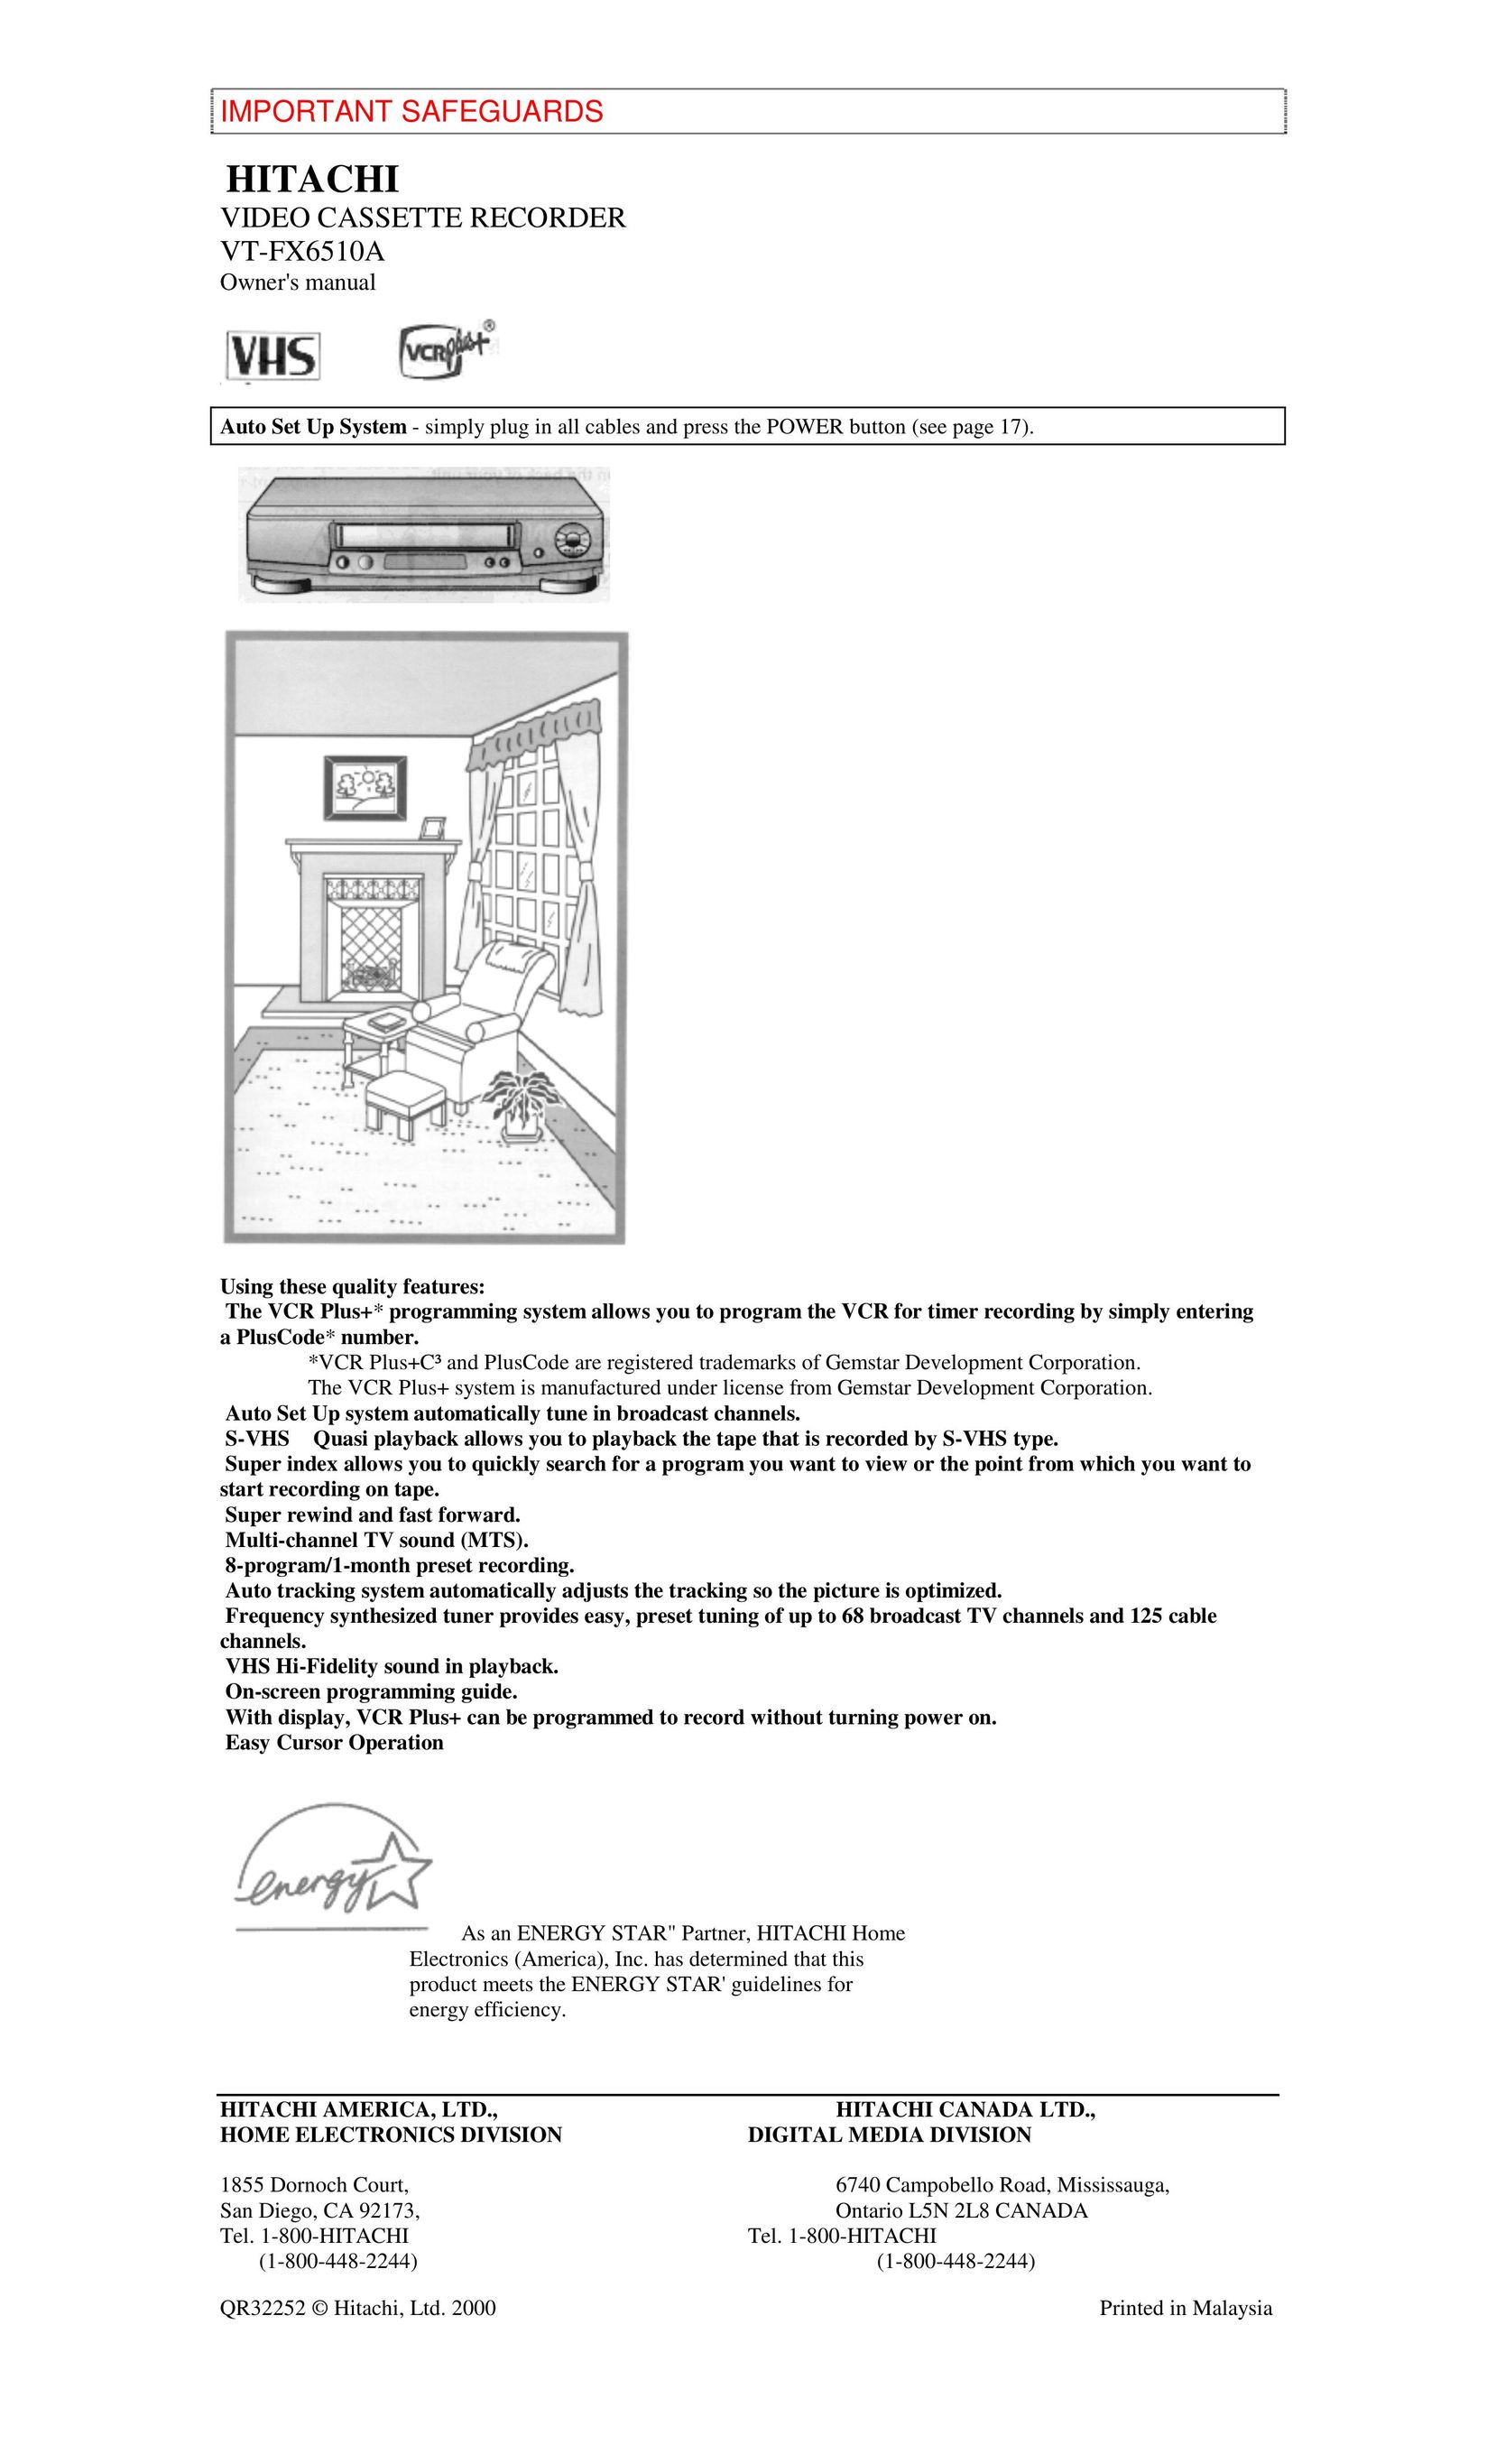 Hitachi VT-FX6510A VCR User Manual